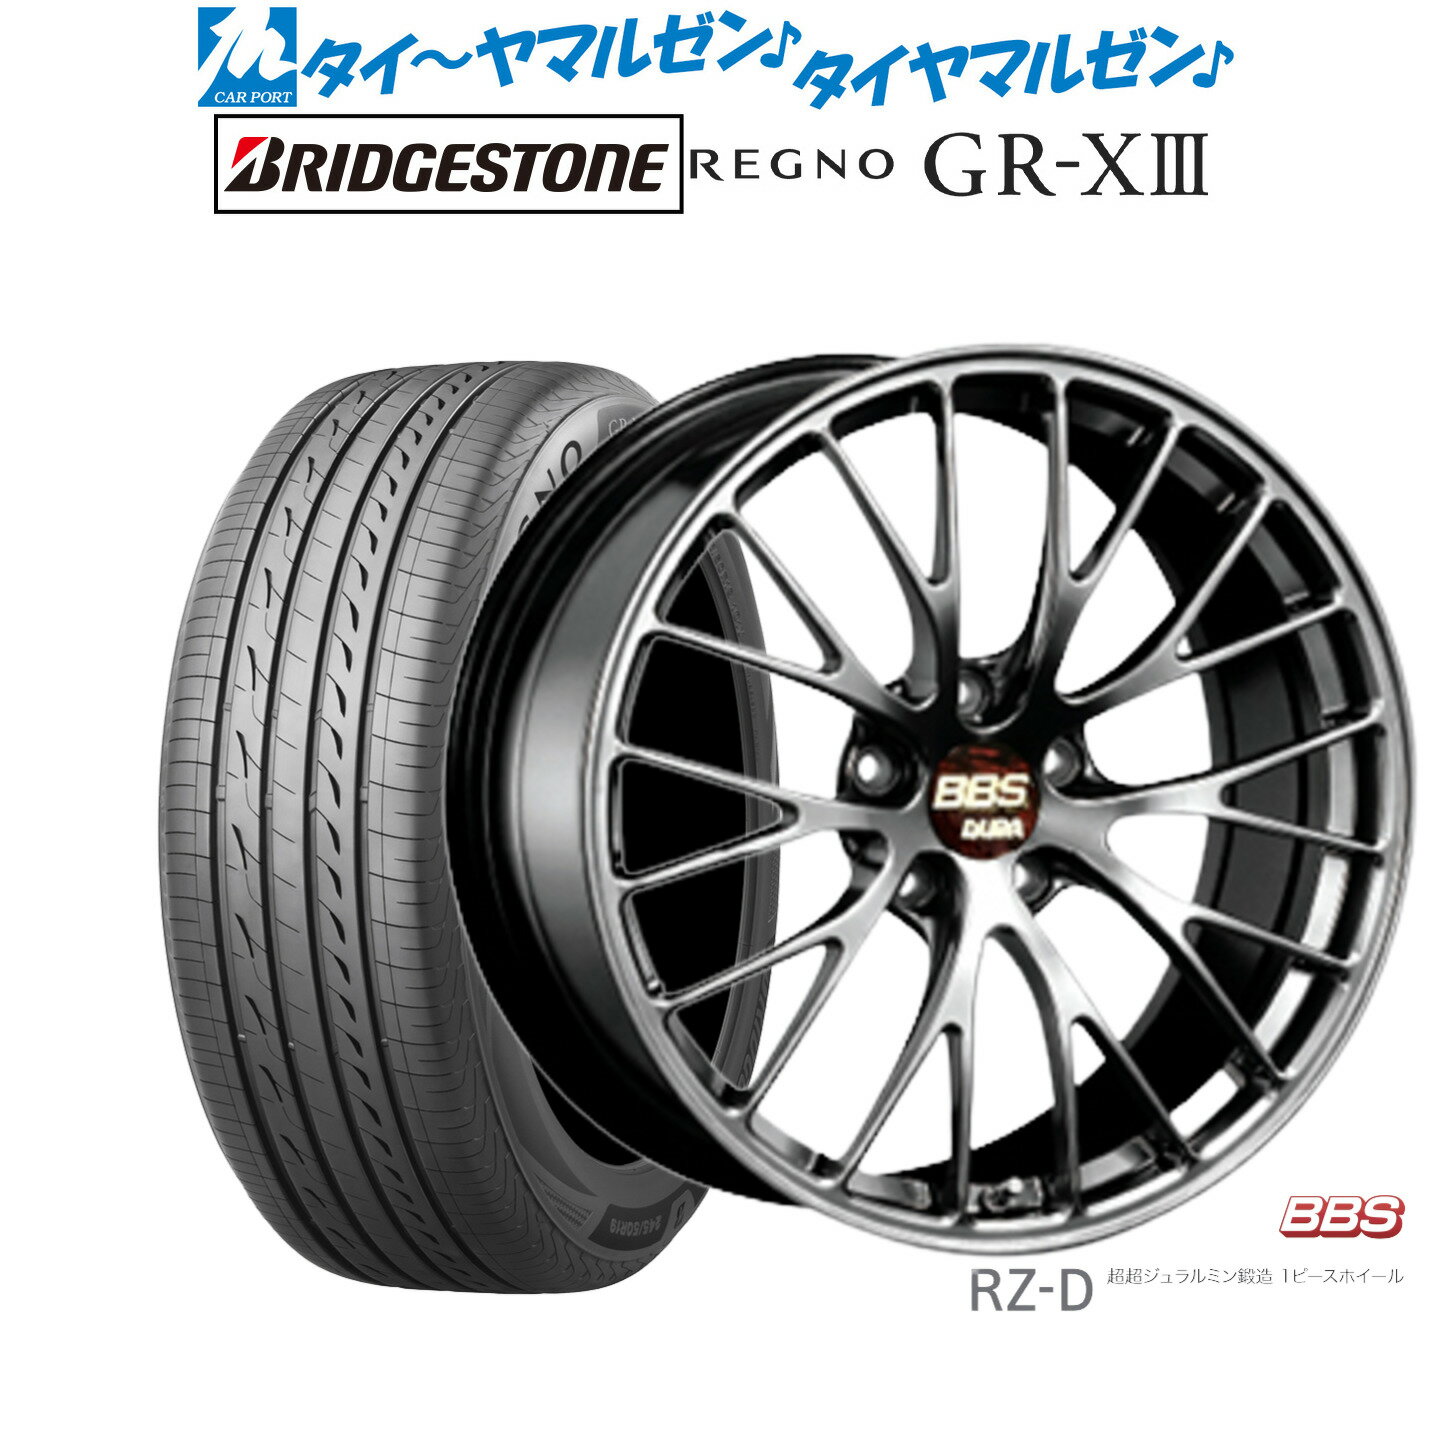 [5/20]割引クーポン配布新品 サマータイヤ ホイール4本セットBBS JAPAN RZ-D19インチ 8.5Jブリヂストン REGNO レグノ GR-XIII(GR-X3)245/40R19